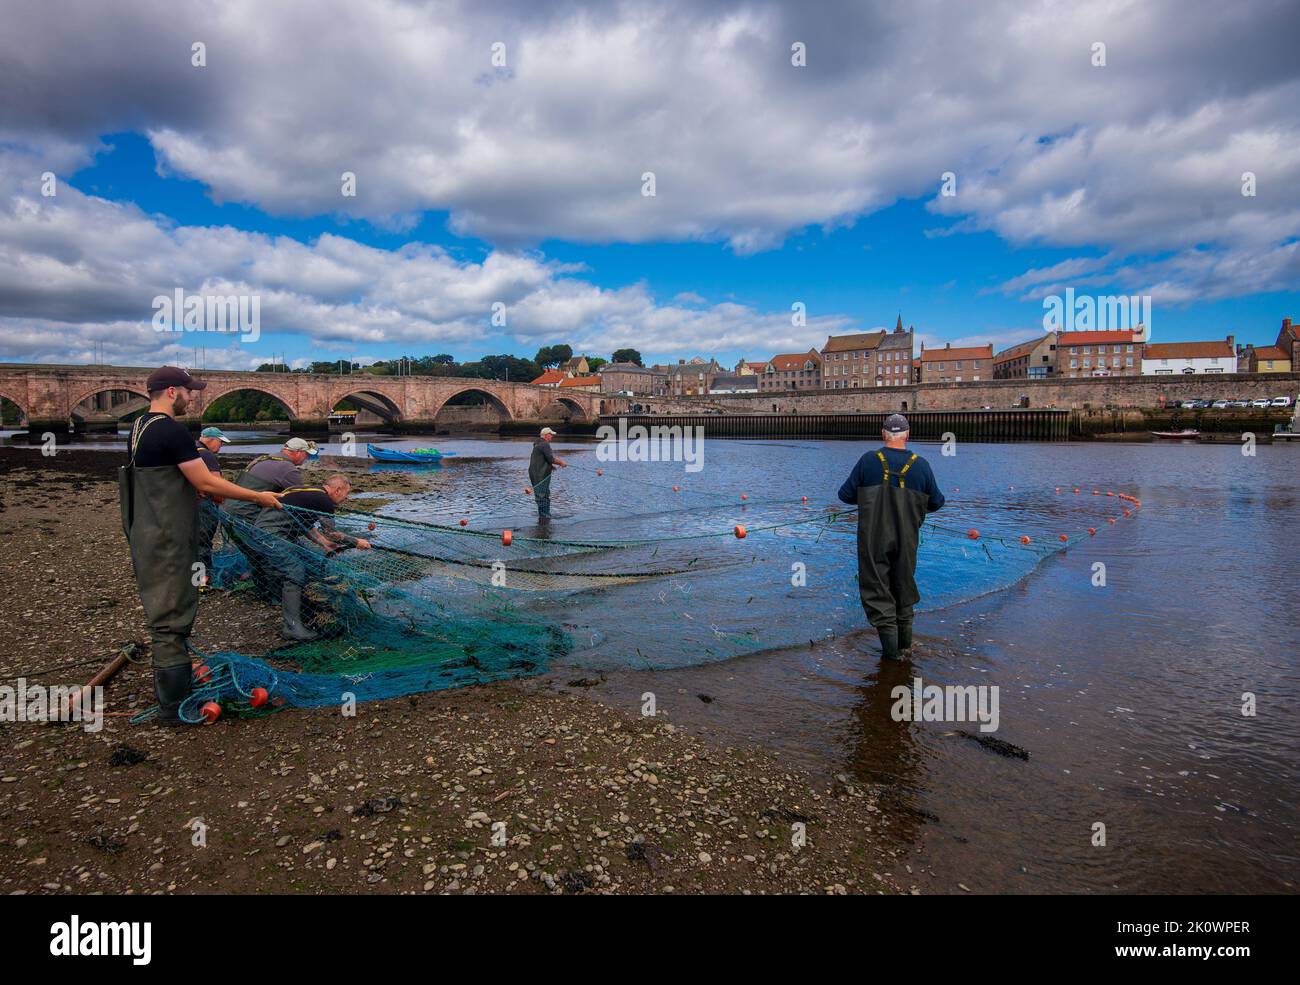 Pêche au saumon sur la rivière Tweedmouth, Berwick on Tweedmouth, Northumberland, Angleterre Banque D'Images